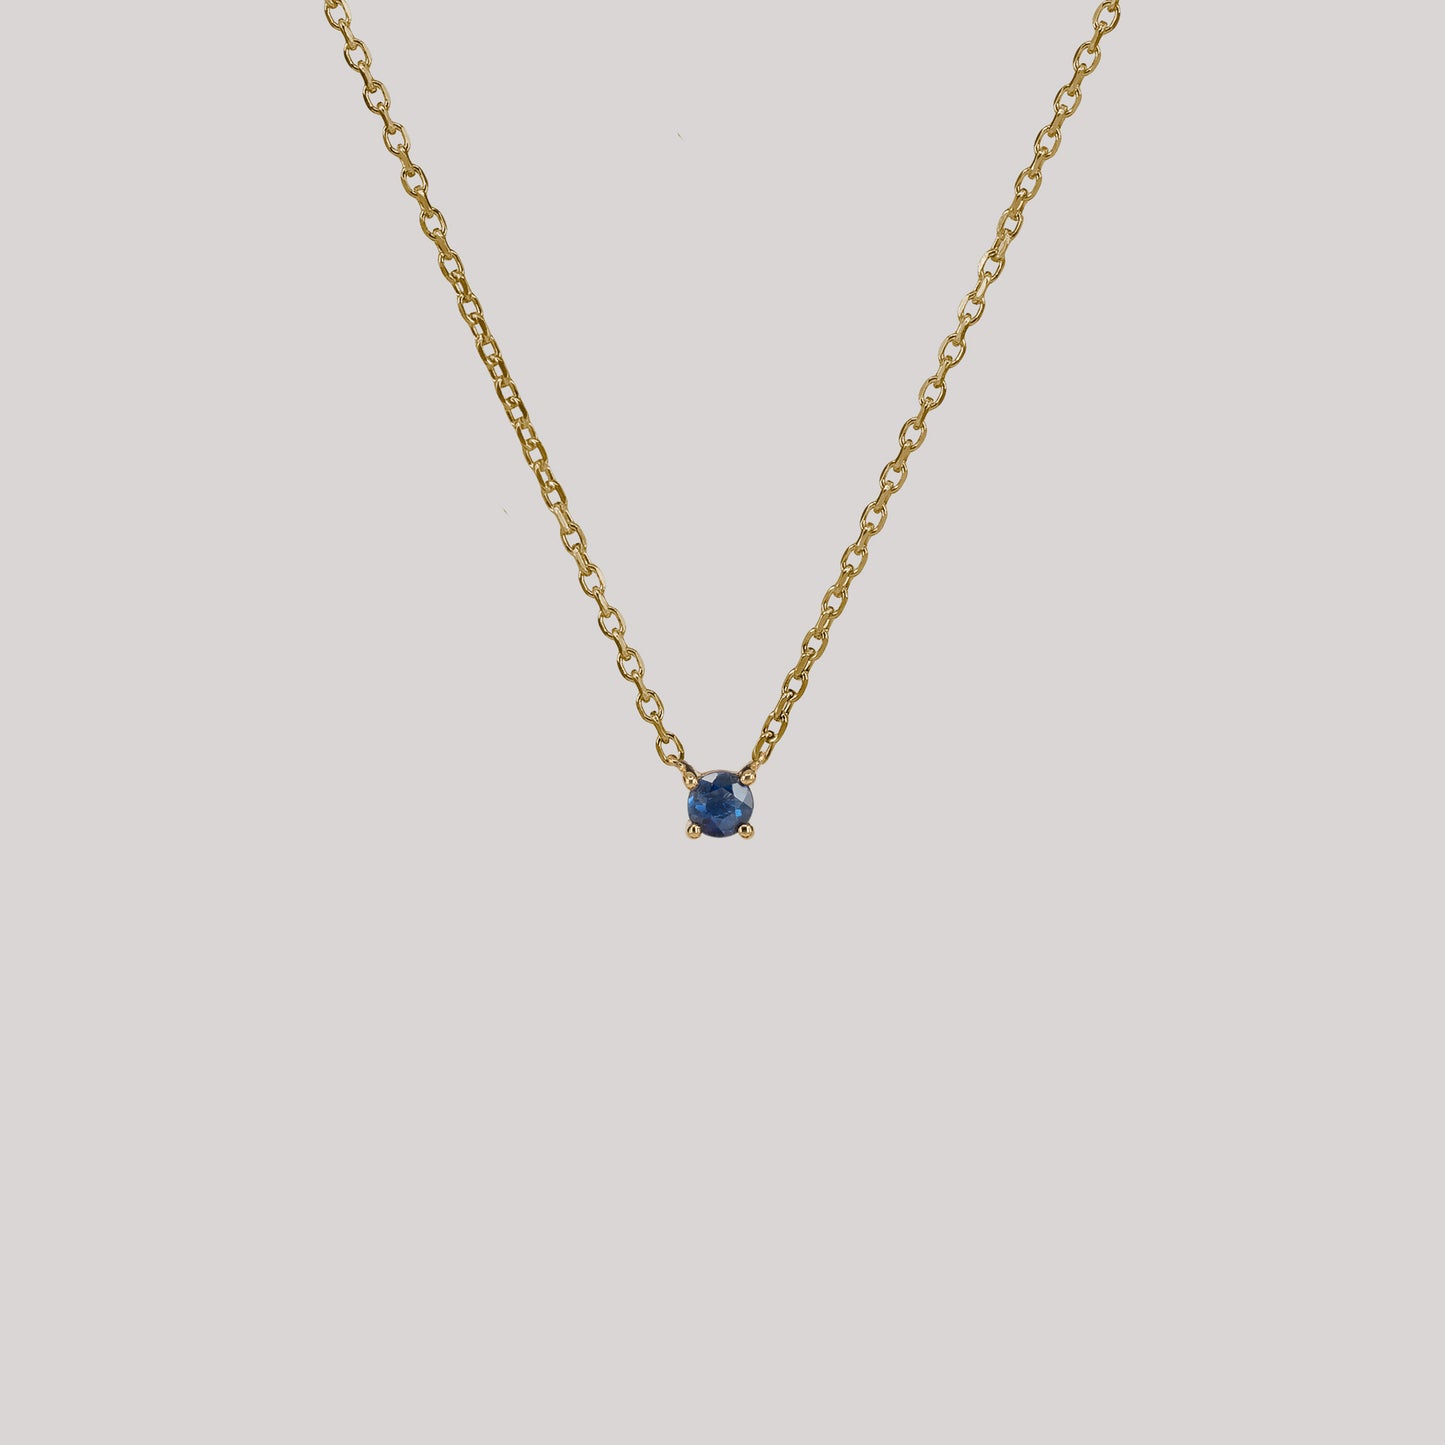 
                  
                    Sophie blue necklace handcraftedcph blue sapphire floating 9k solid gold necklace halskæde ren massiv guld safir elegant timeless handmade handcrafted danish design
                  
                